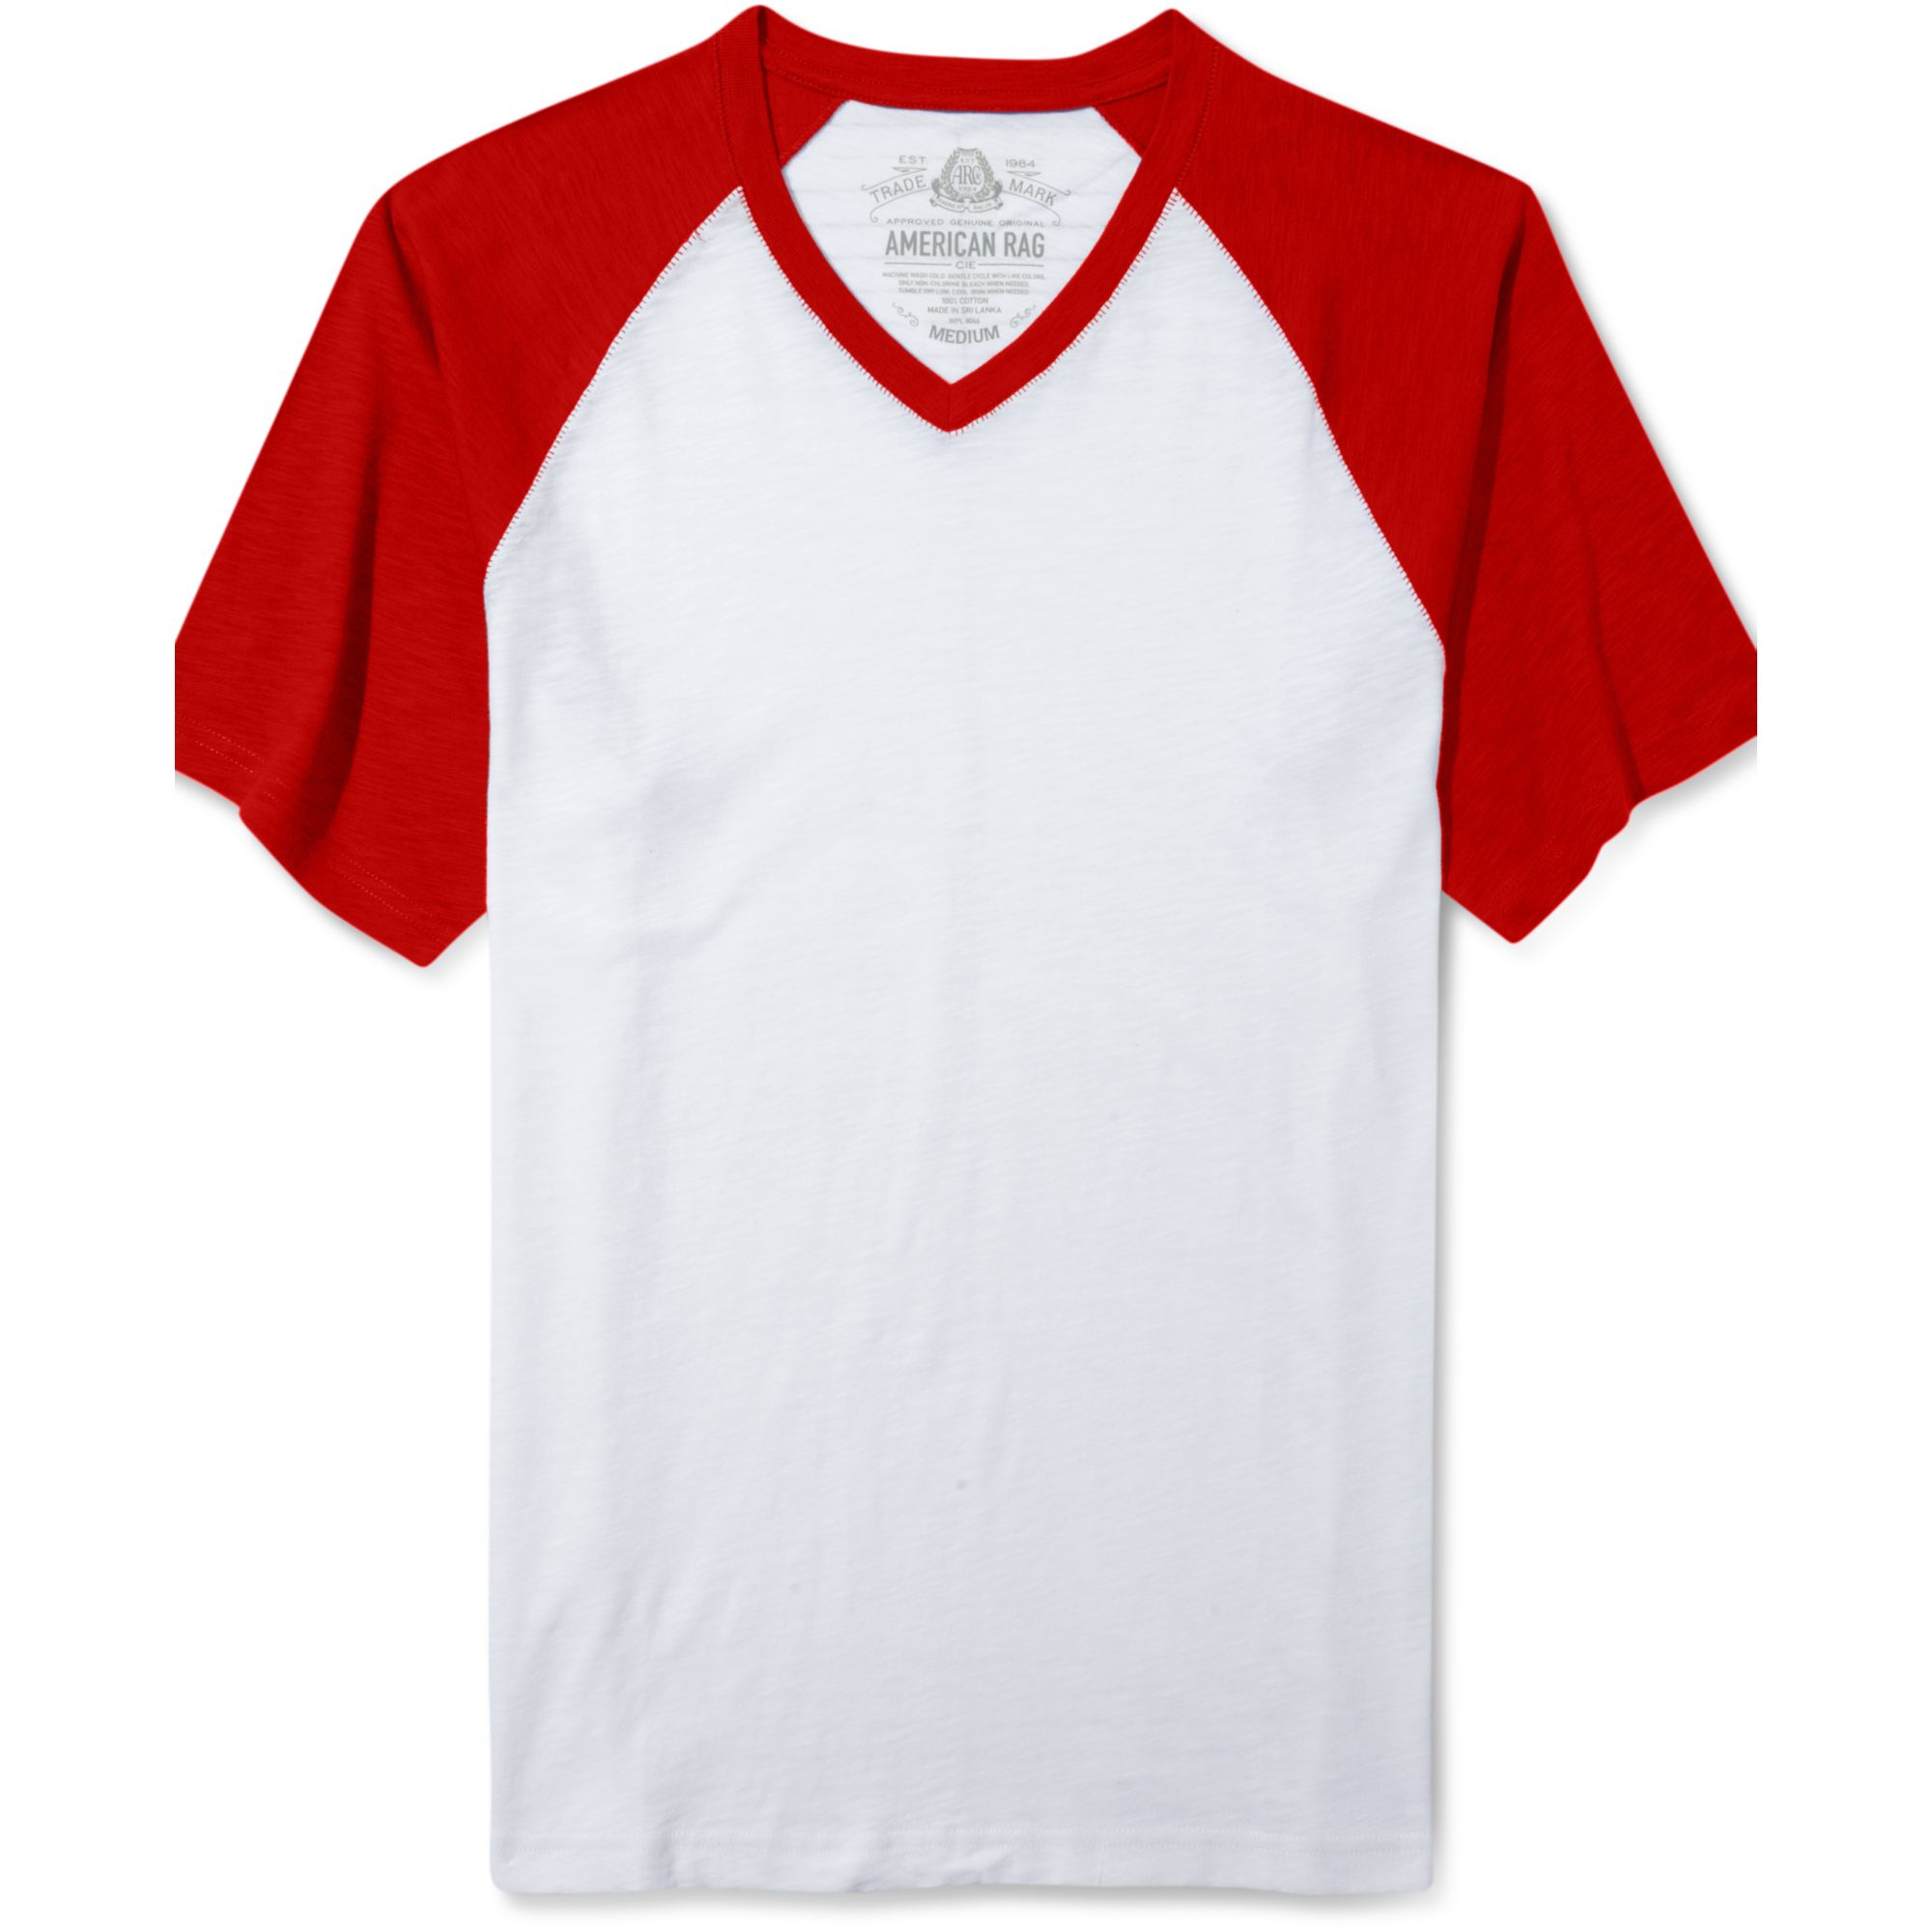 Lyst - American rag Short Sleeve Baseball Raglan T Shirt in White for Men